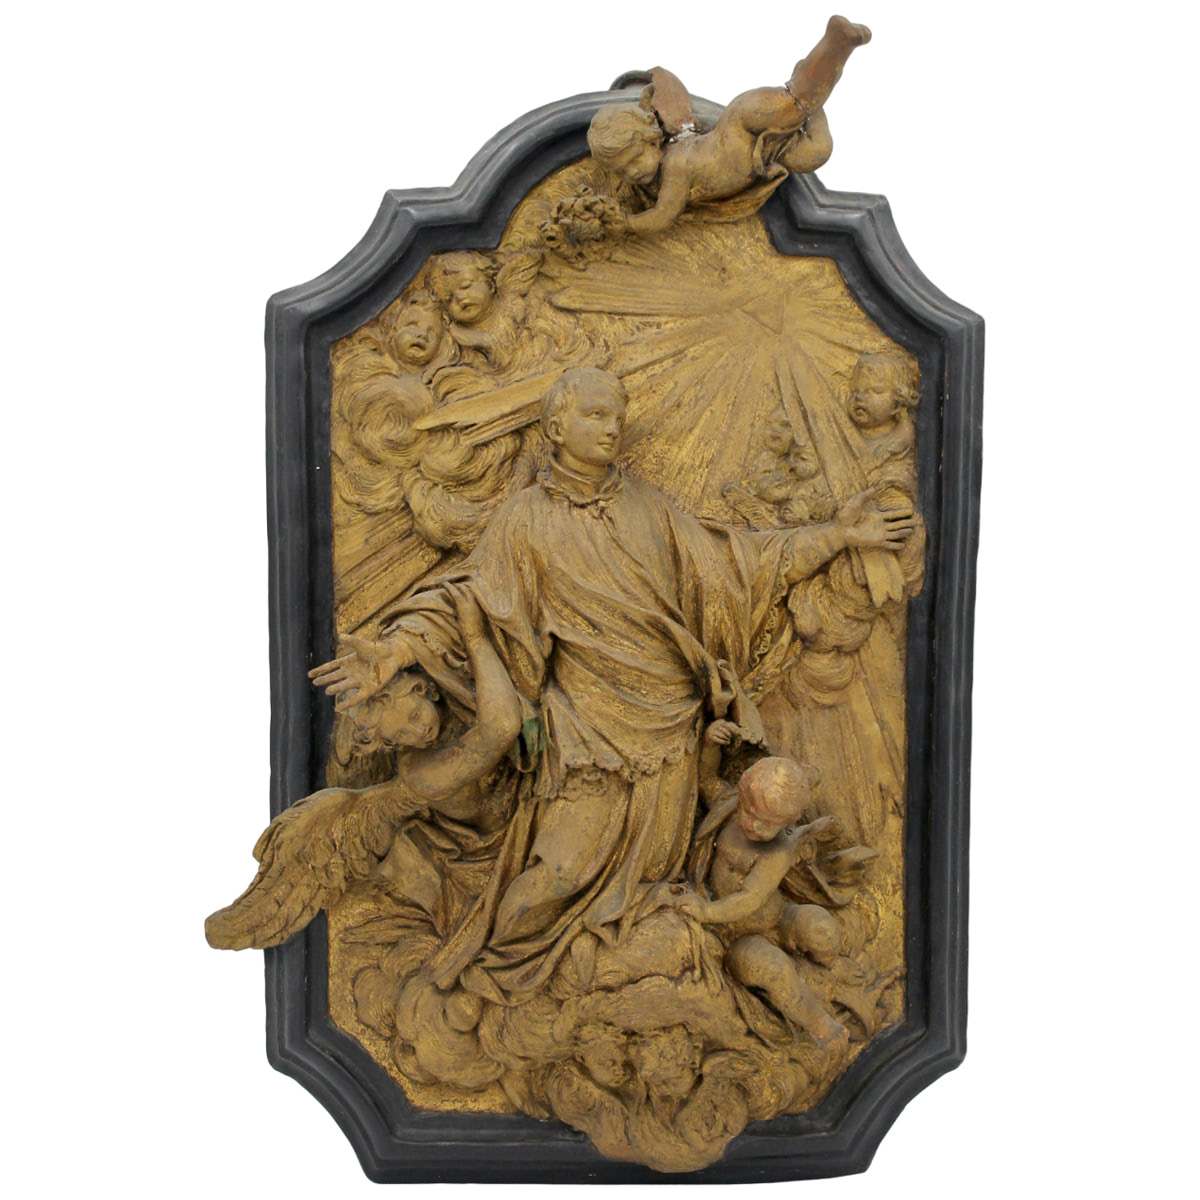 Figura di Santo con cherubini - Figure of a Saint with cherubs